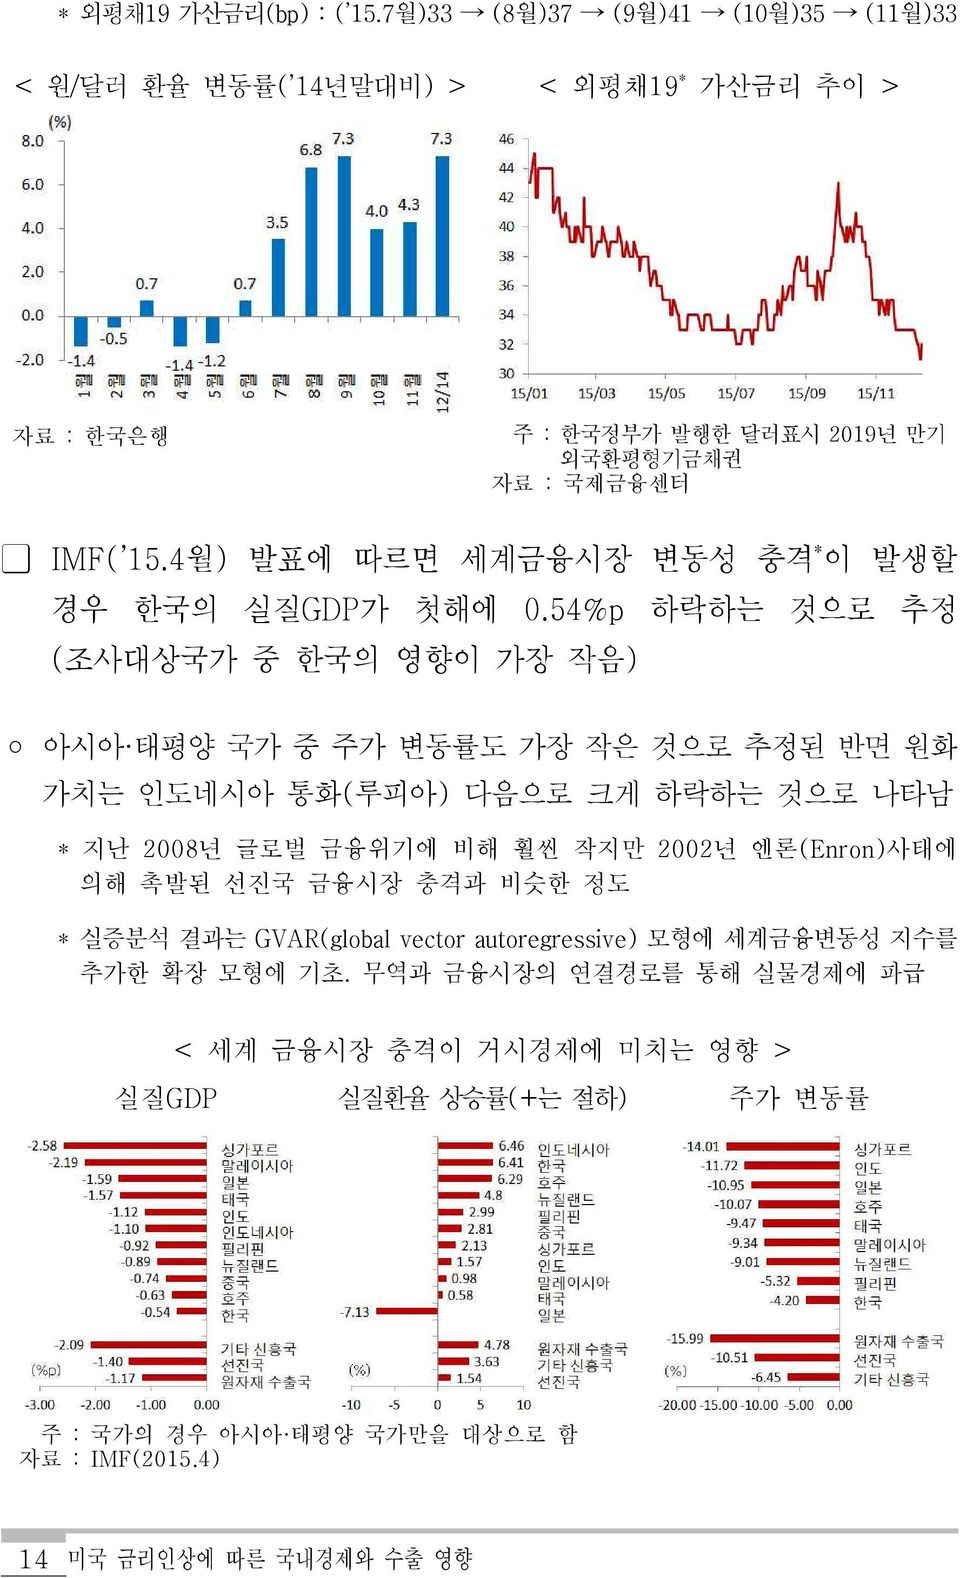 4월) 발표에 따르면 세계금융시장 변동성 충격 * 이 발생할 경우 한국의 실질GDP가 첫해에 0.